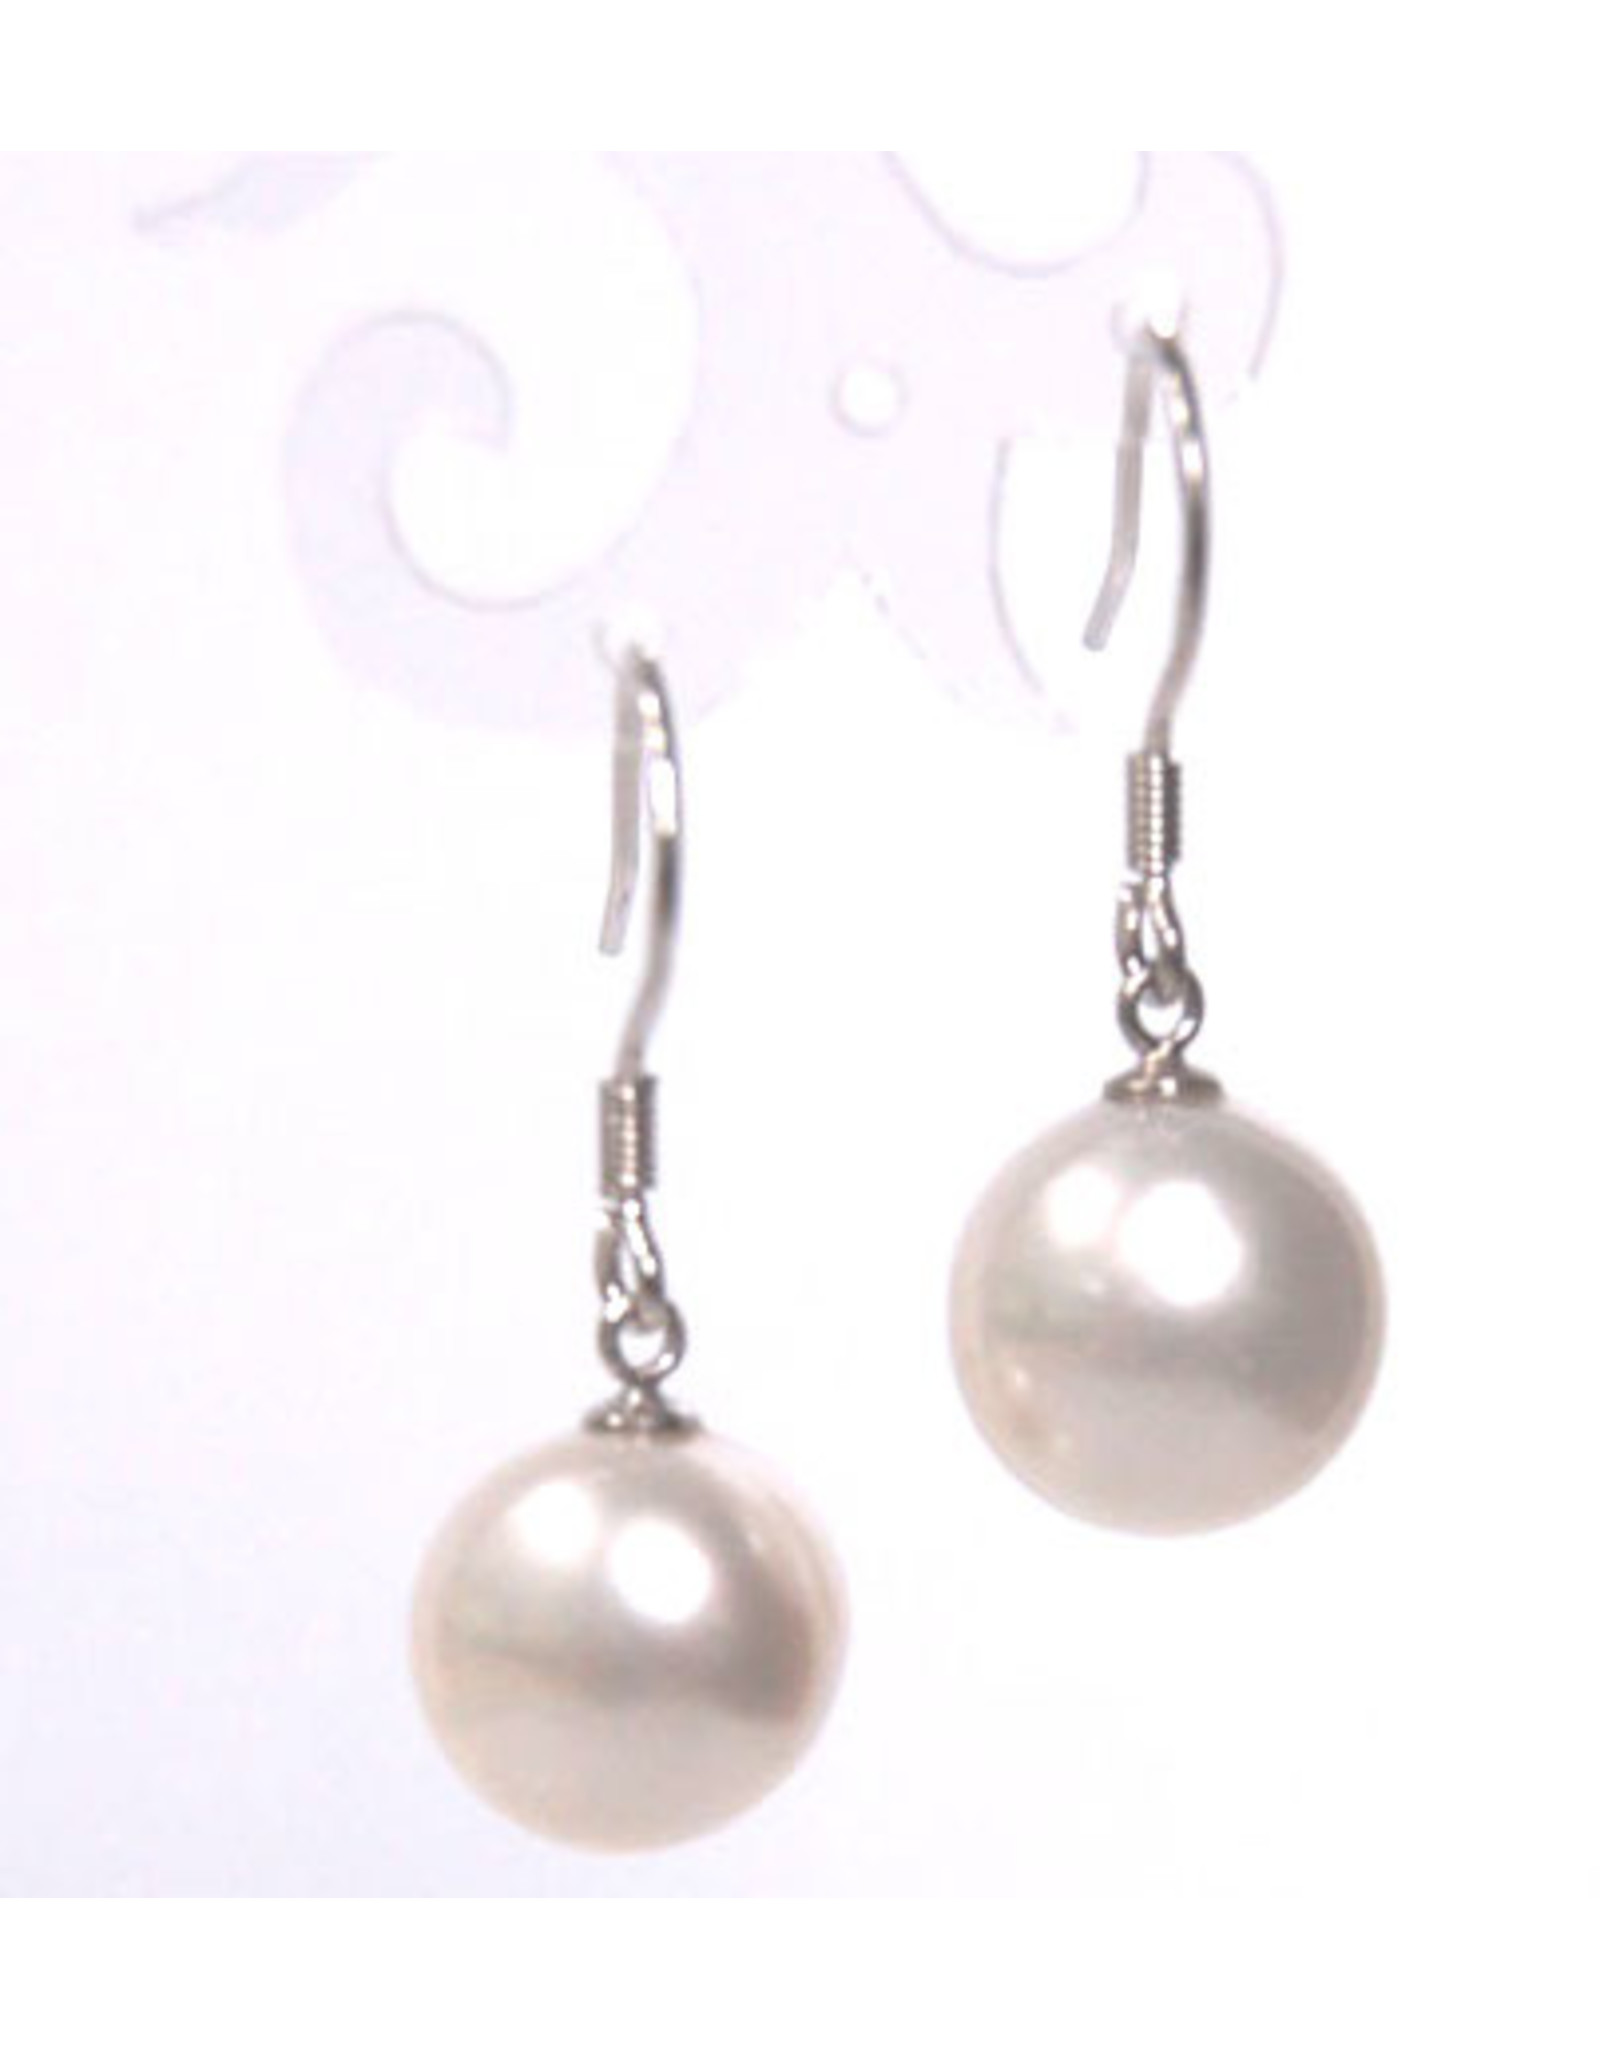 11mm Pearl Drop Earrings